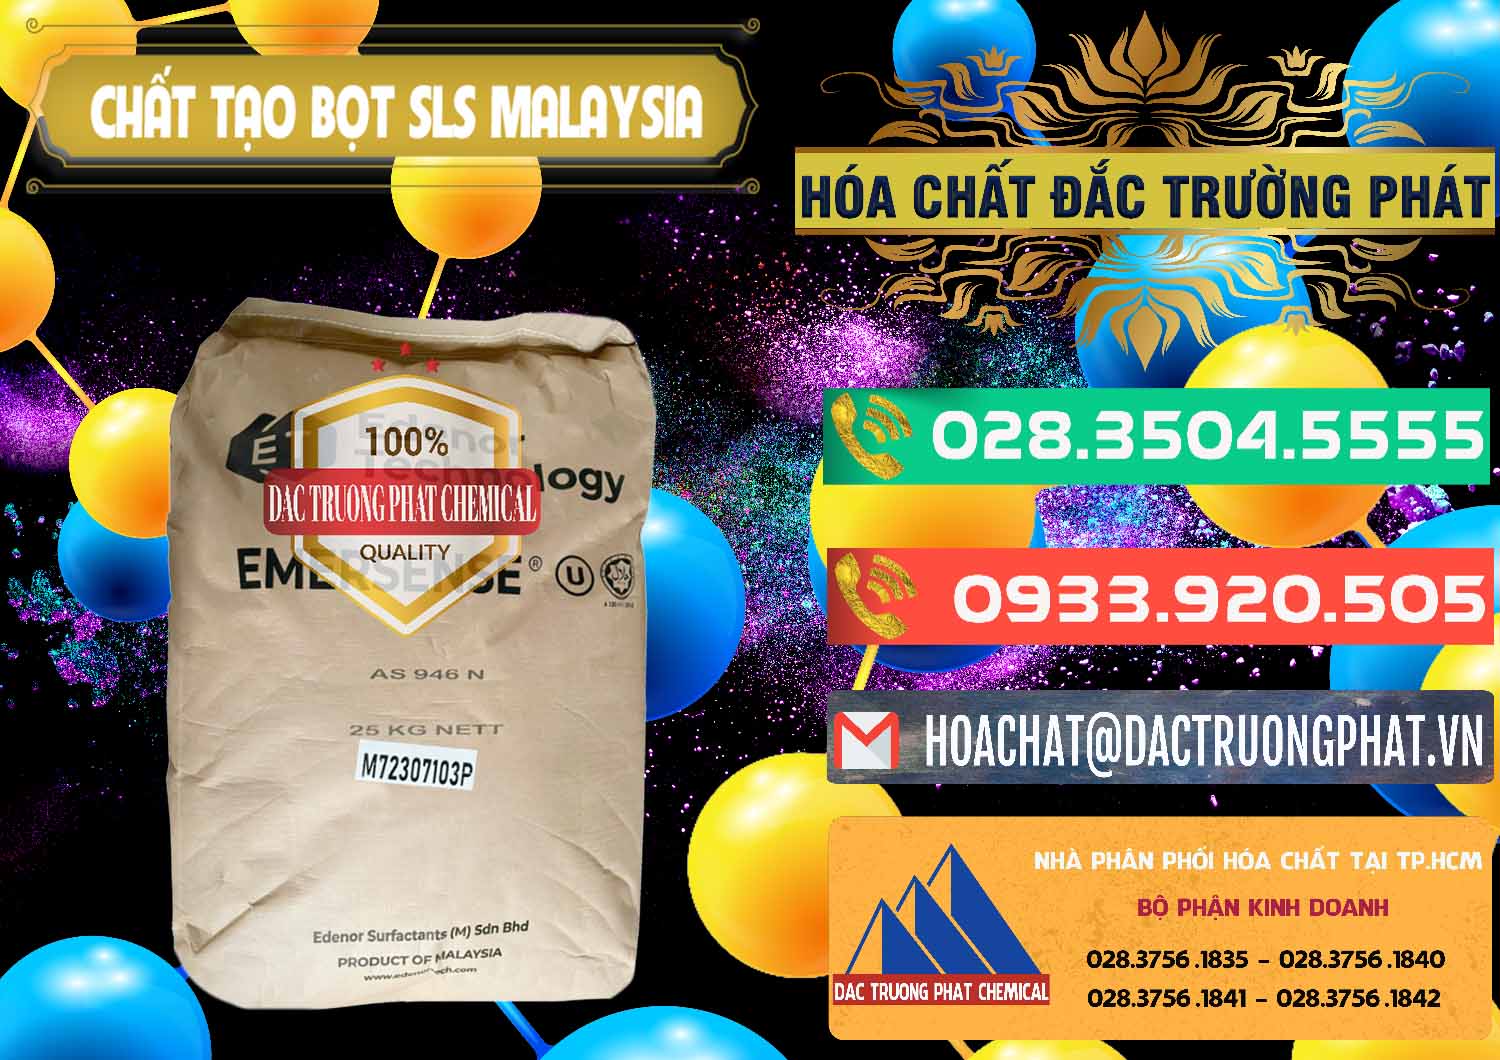 Đơn vị bán & cung cấp Chất Tạo Bọt SLS Emersense Mã Lai Malaysia - 0381 - Nơi chuyên nhập khẩu _ cung cấp hóa chất tại TP.HCM - congtyhoachat.com.vn